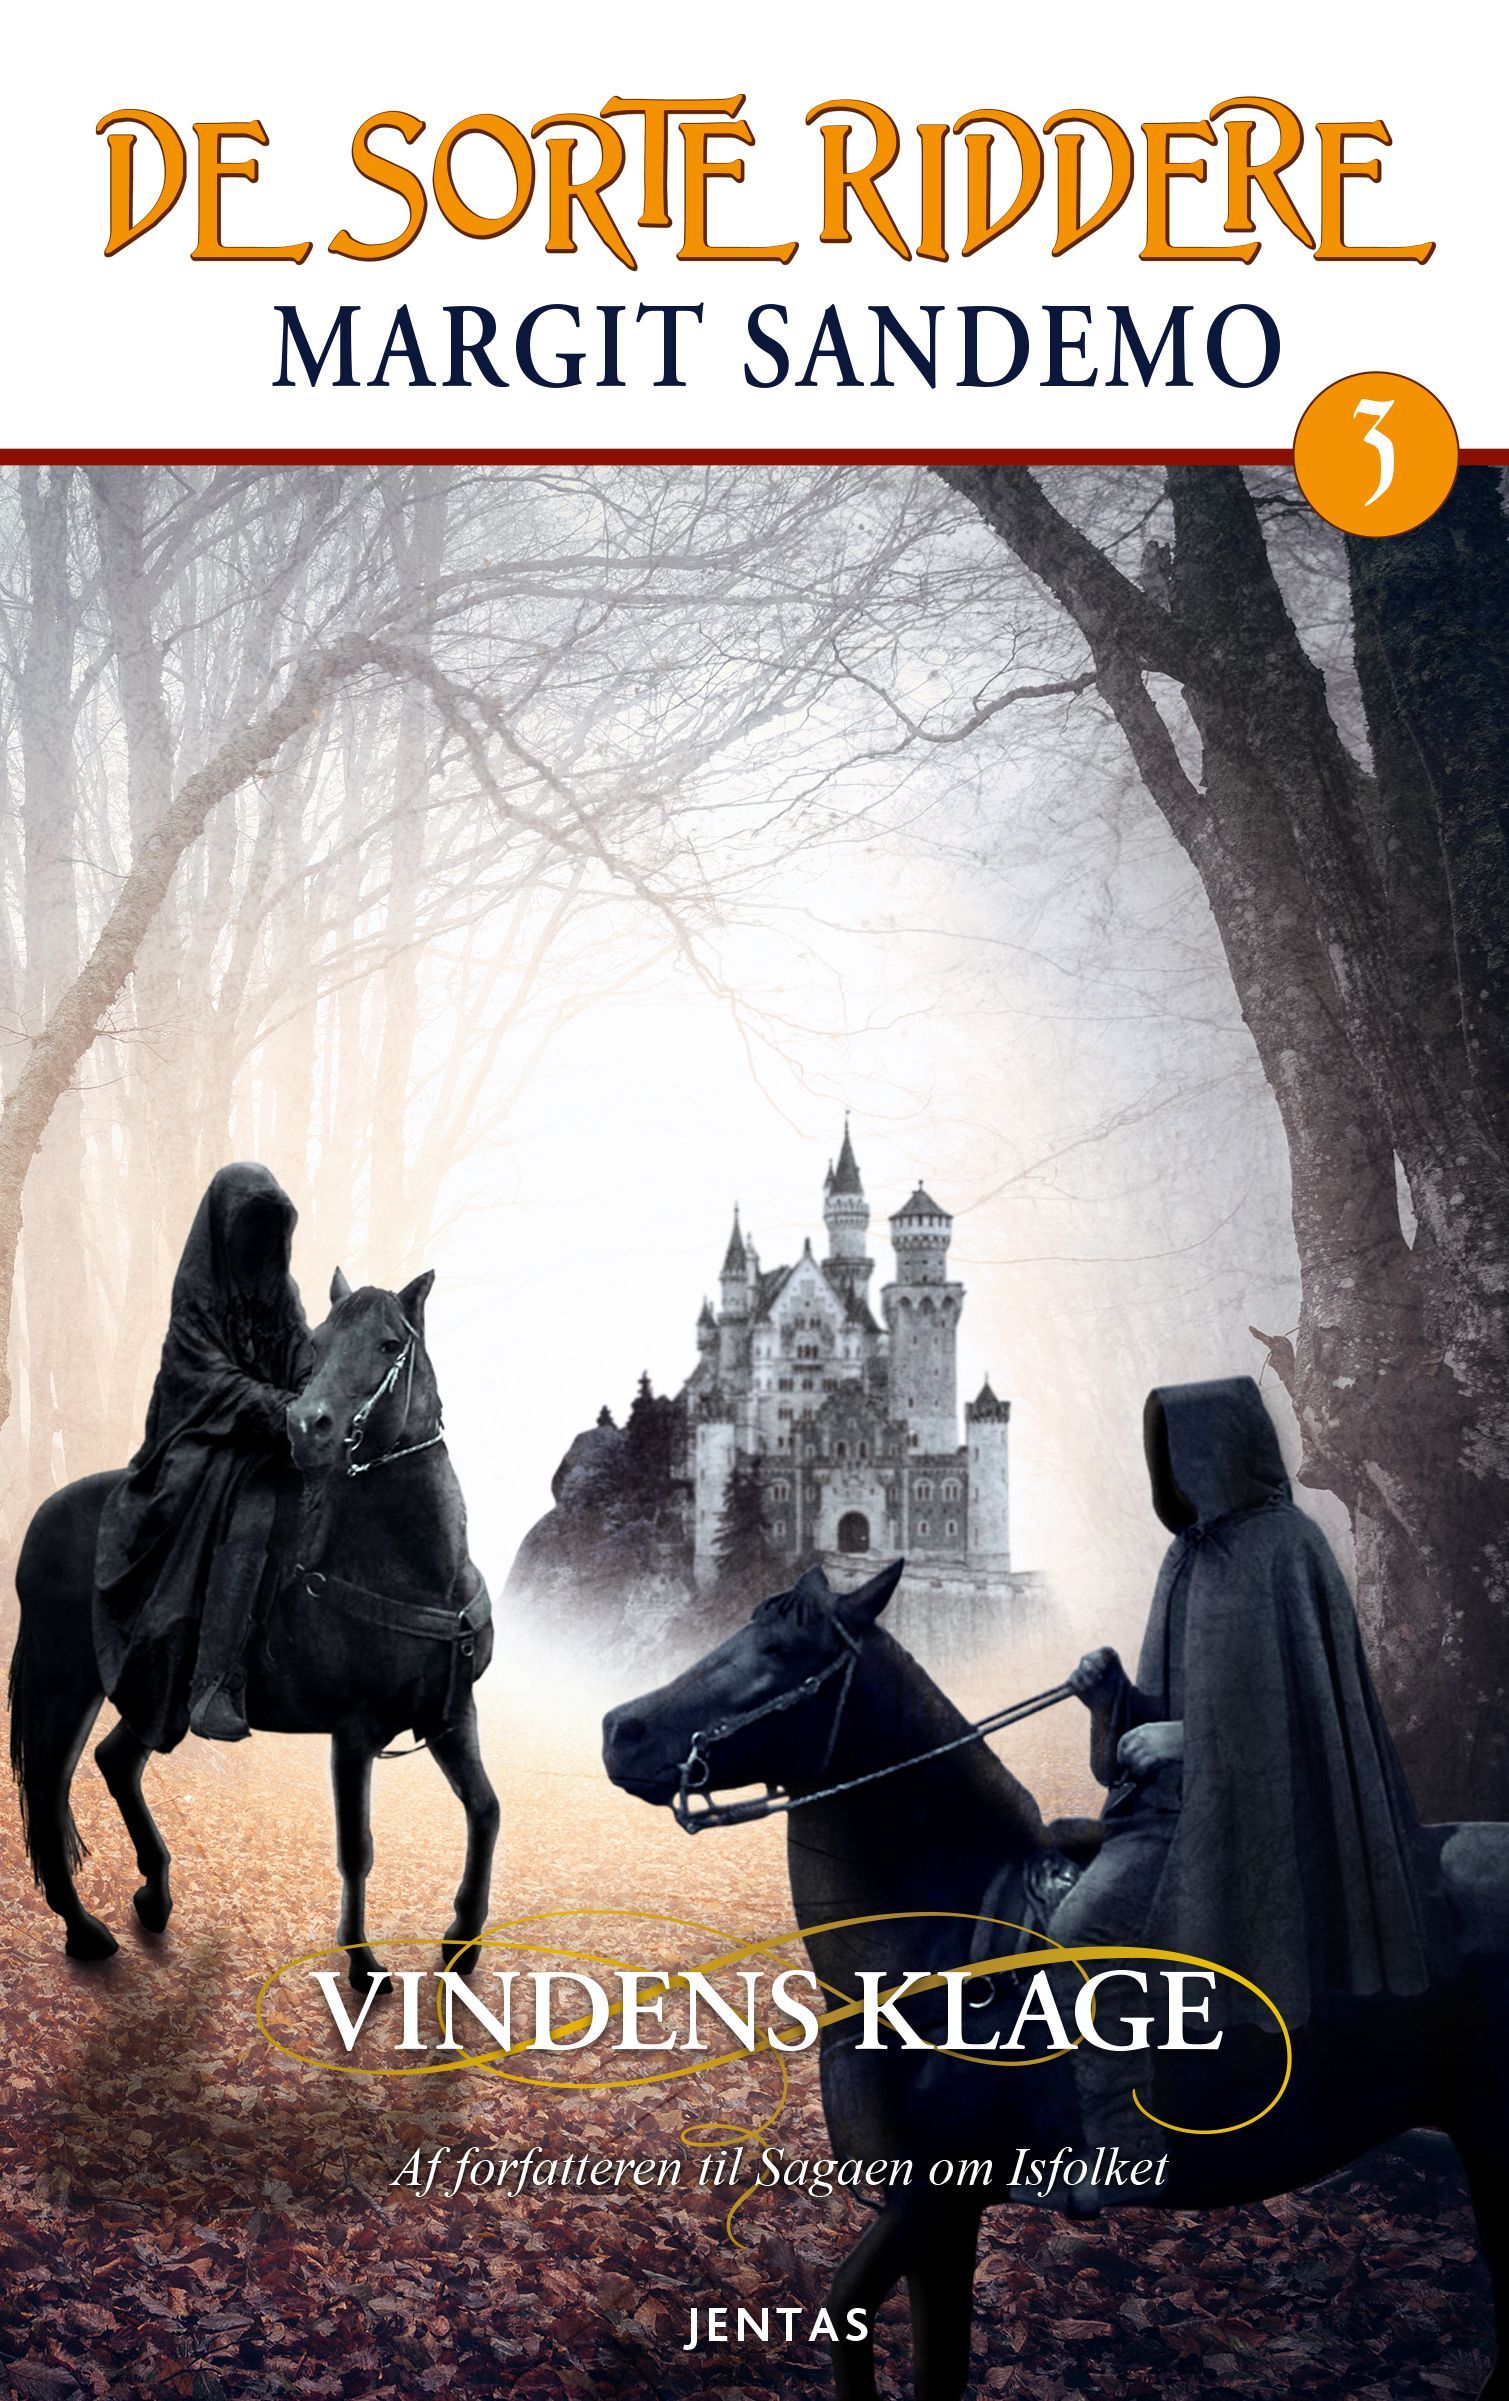 De sorte riddere 3 - Vindens klage, audiobook by Margit Sandemo